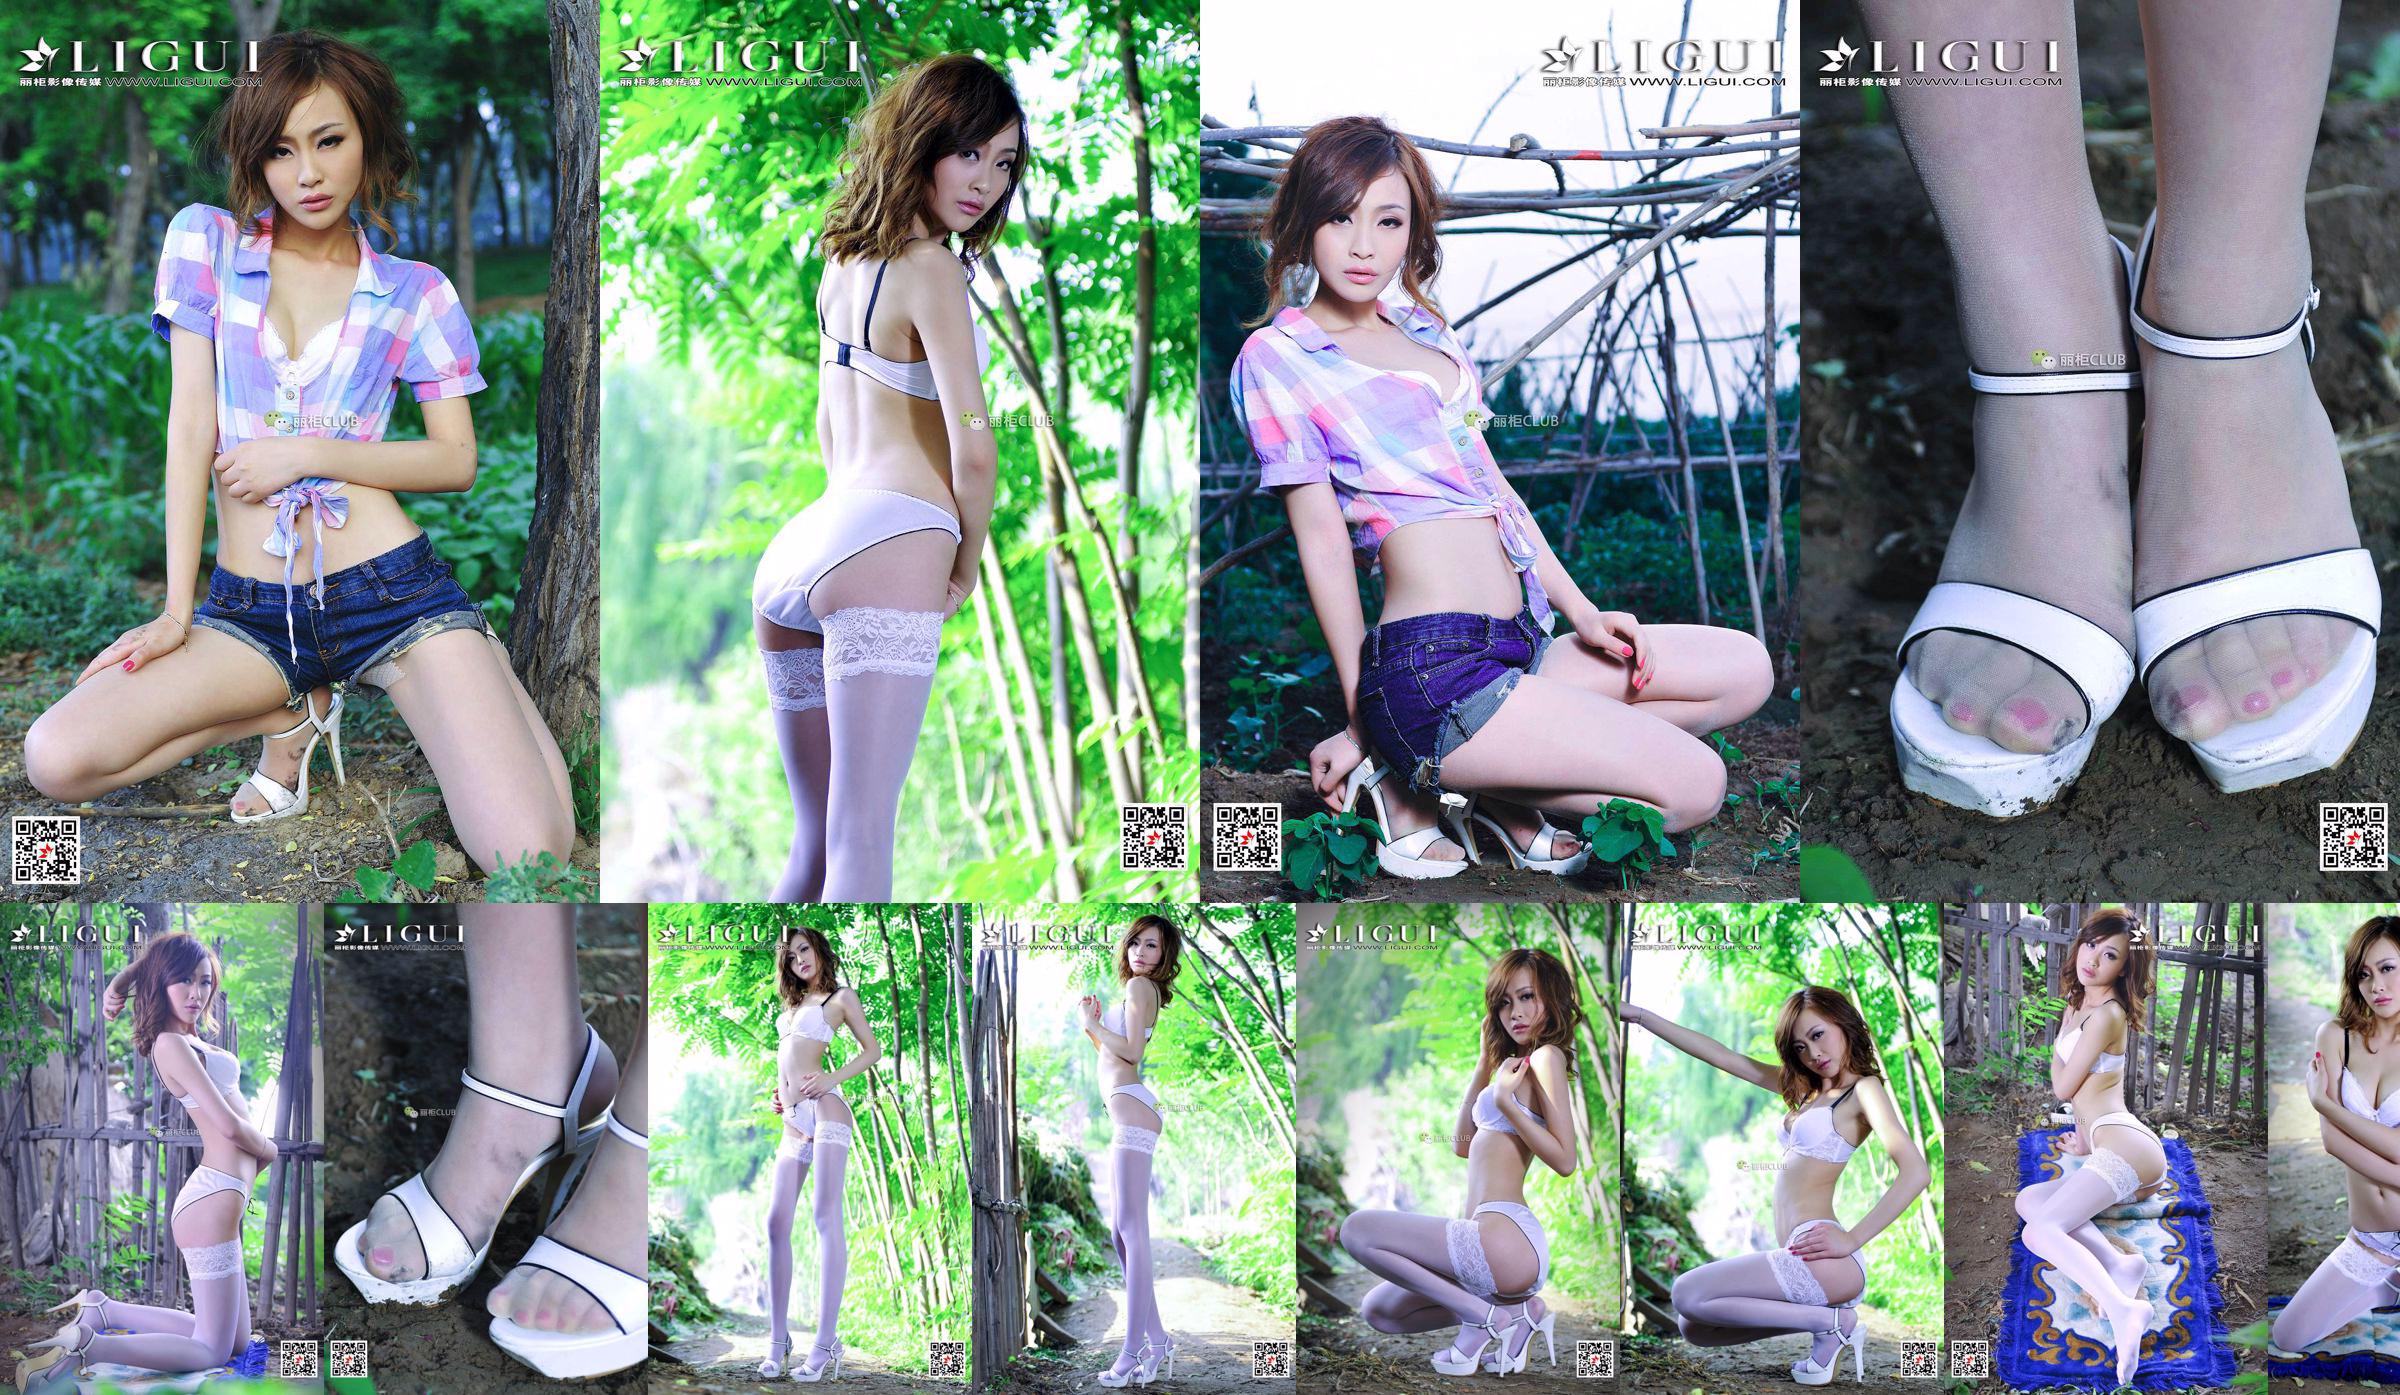 Leg model Tong Lei "White Silk Beautiful Leg Girl" [LIGUI] Beautiful Legs in Stockings No.9e7784 Page 3